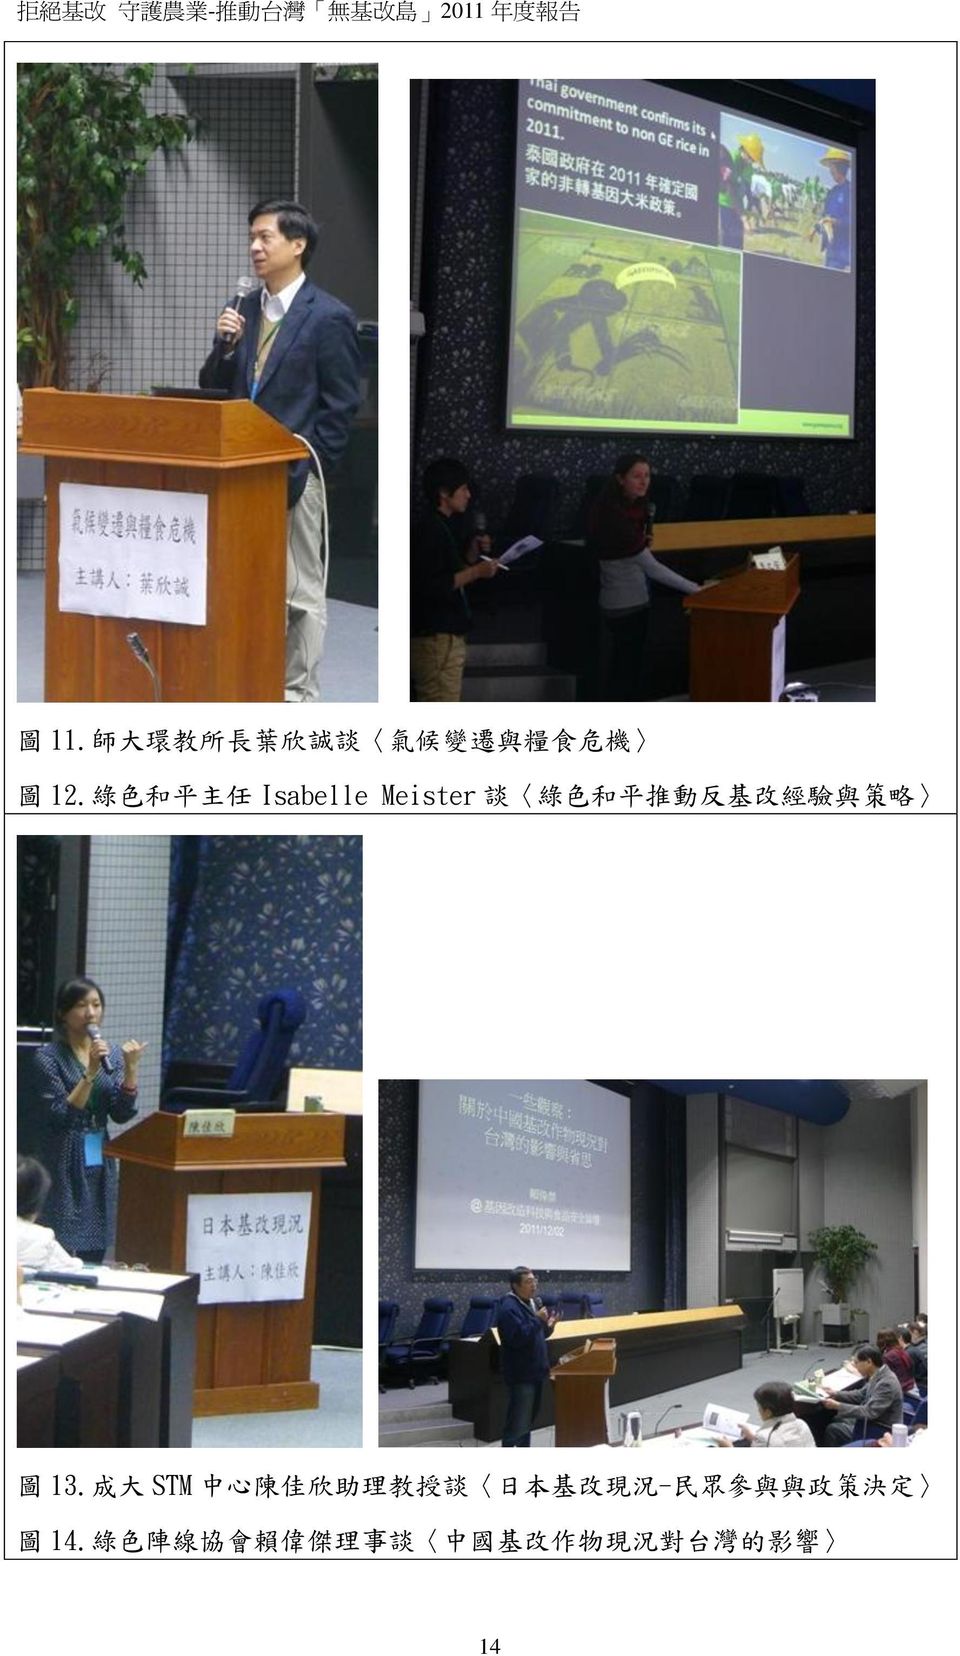 圖 13. 成 大 STM 中 心 陳 佳 欣 助 理 教 授 談 日 本 基 改 現 況 - 民 眾 參 與 與